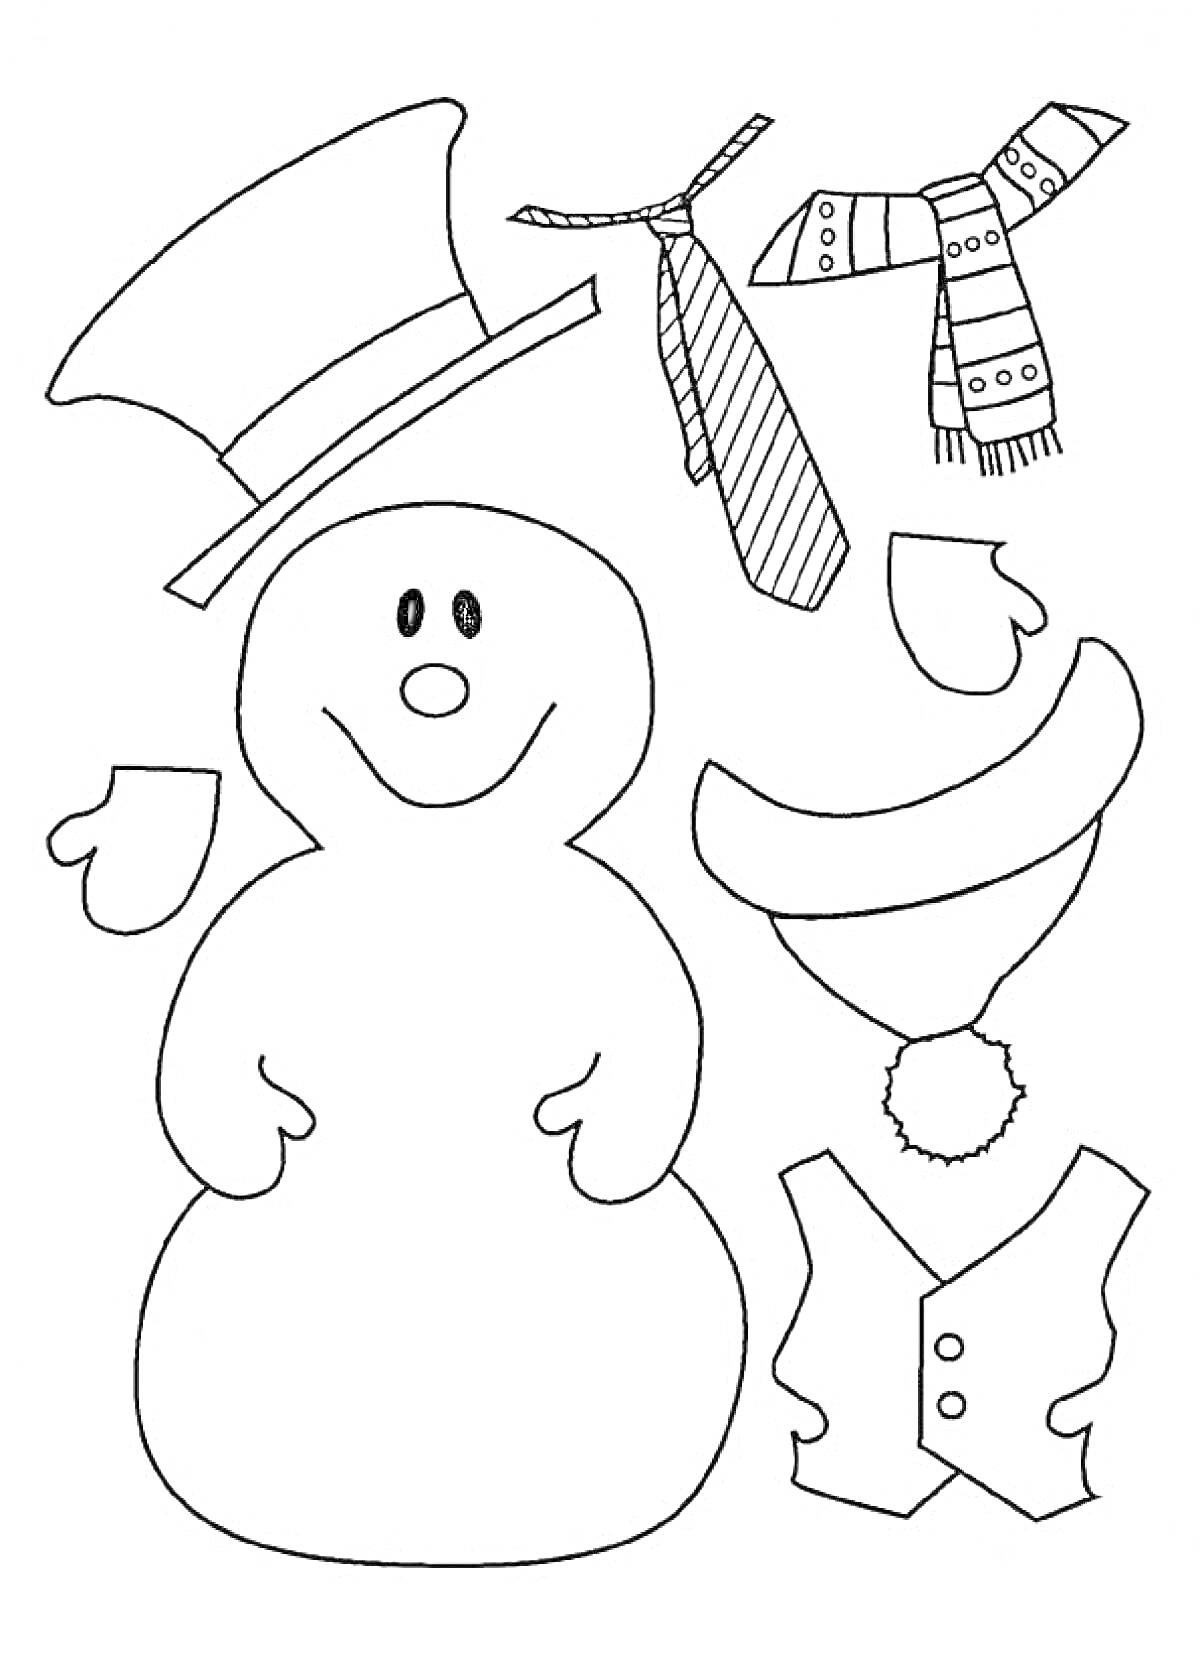 Раскраска Снеговик с аксессуарами (шляпа, гавайский венок, шарф, галстук, варежки, жилет)